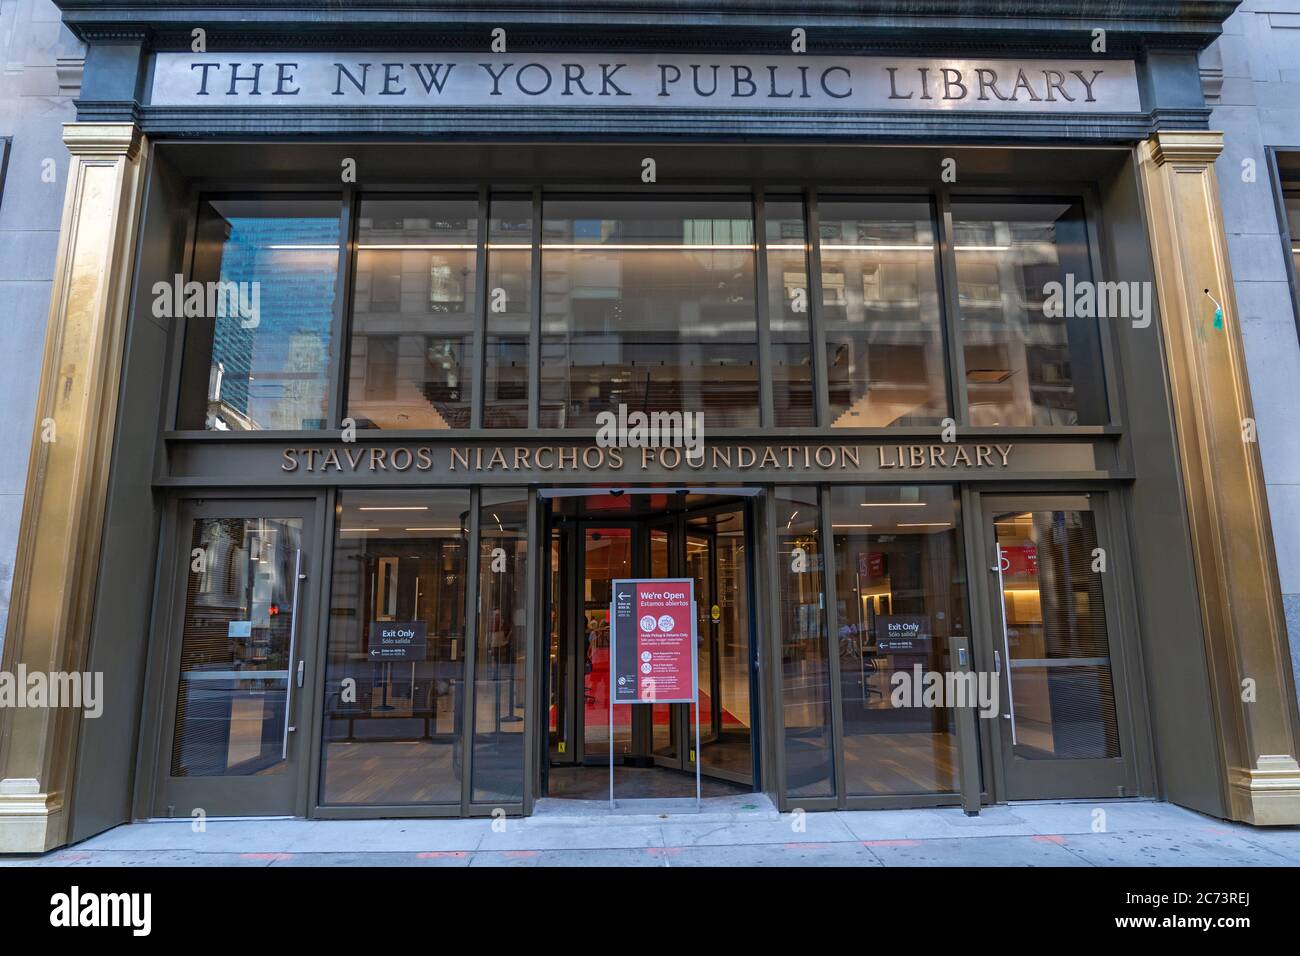 Vue extérieure de la bibliothèque de la Fondation Stavros Niarchos le jour de la réouverture après la fermeture de toutes les bibliothèques dans le cadre de la pandémie COVID-19.la Fondation a fait don d'argent pour achever la rénovation de la bibliothèque publique de Mid-Manhattan et elle a été renommée après la fondation. NYPL a été fermé depuis mars 2020 et certains d'entre eux ont été rouverts pour la première fois ce jour pour que les gens puissent récupérer ou déposer des livres en personne. Banque D'Images